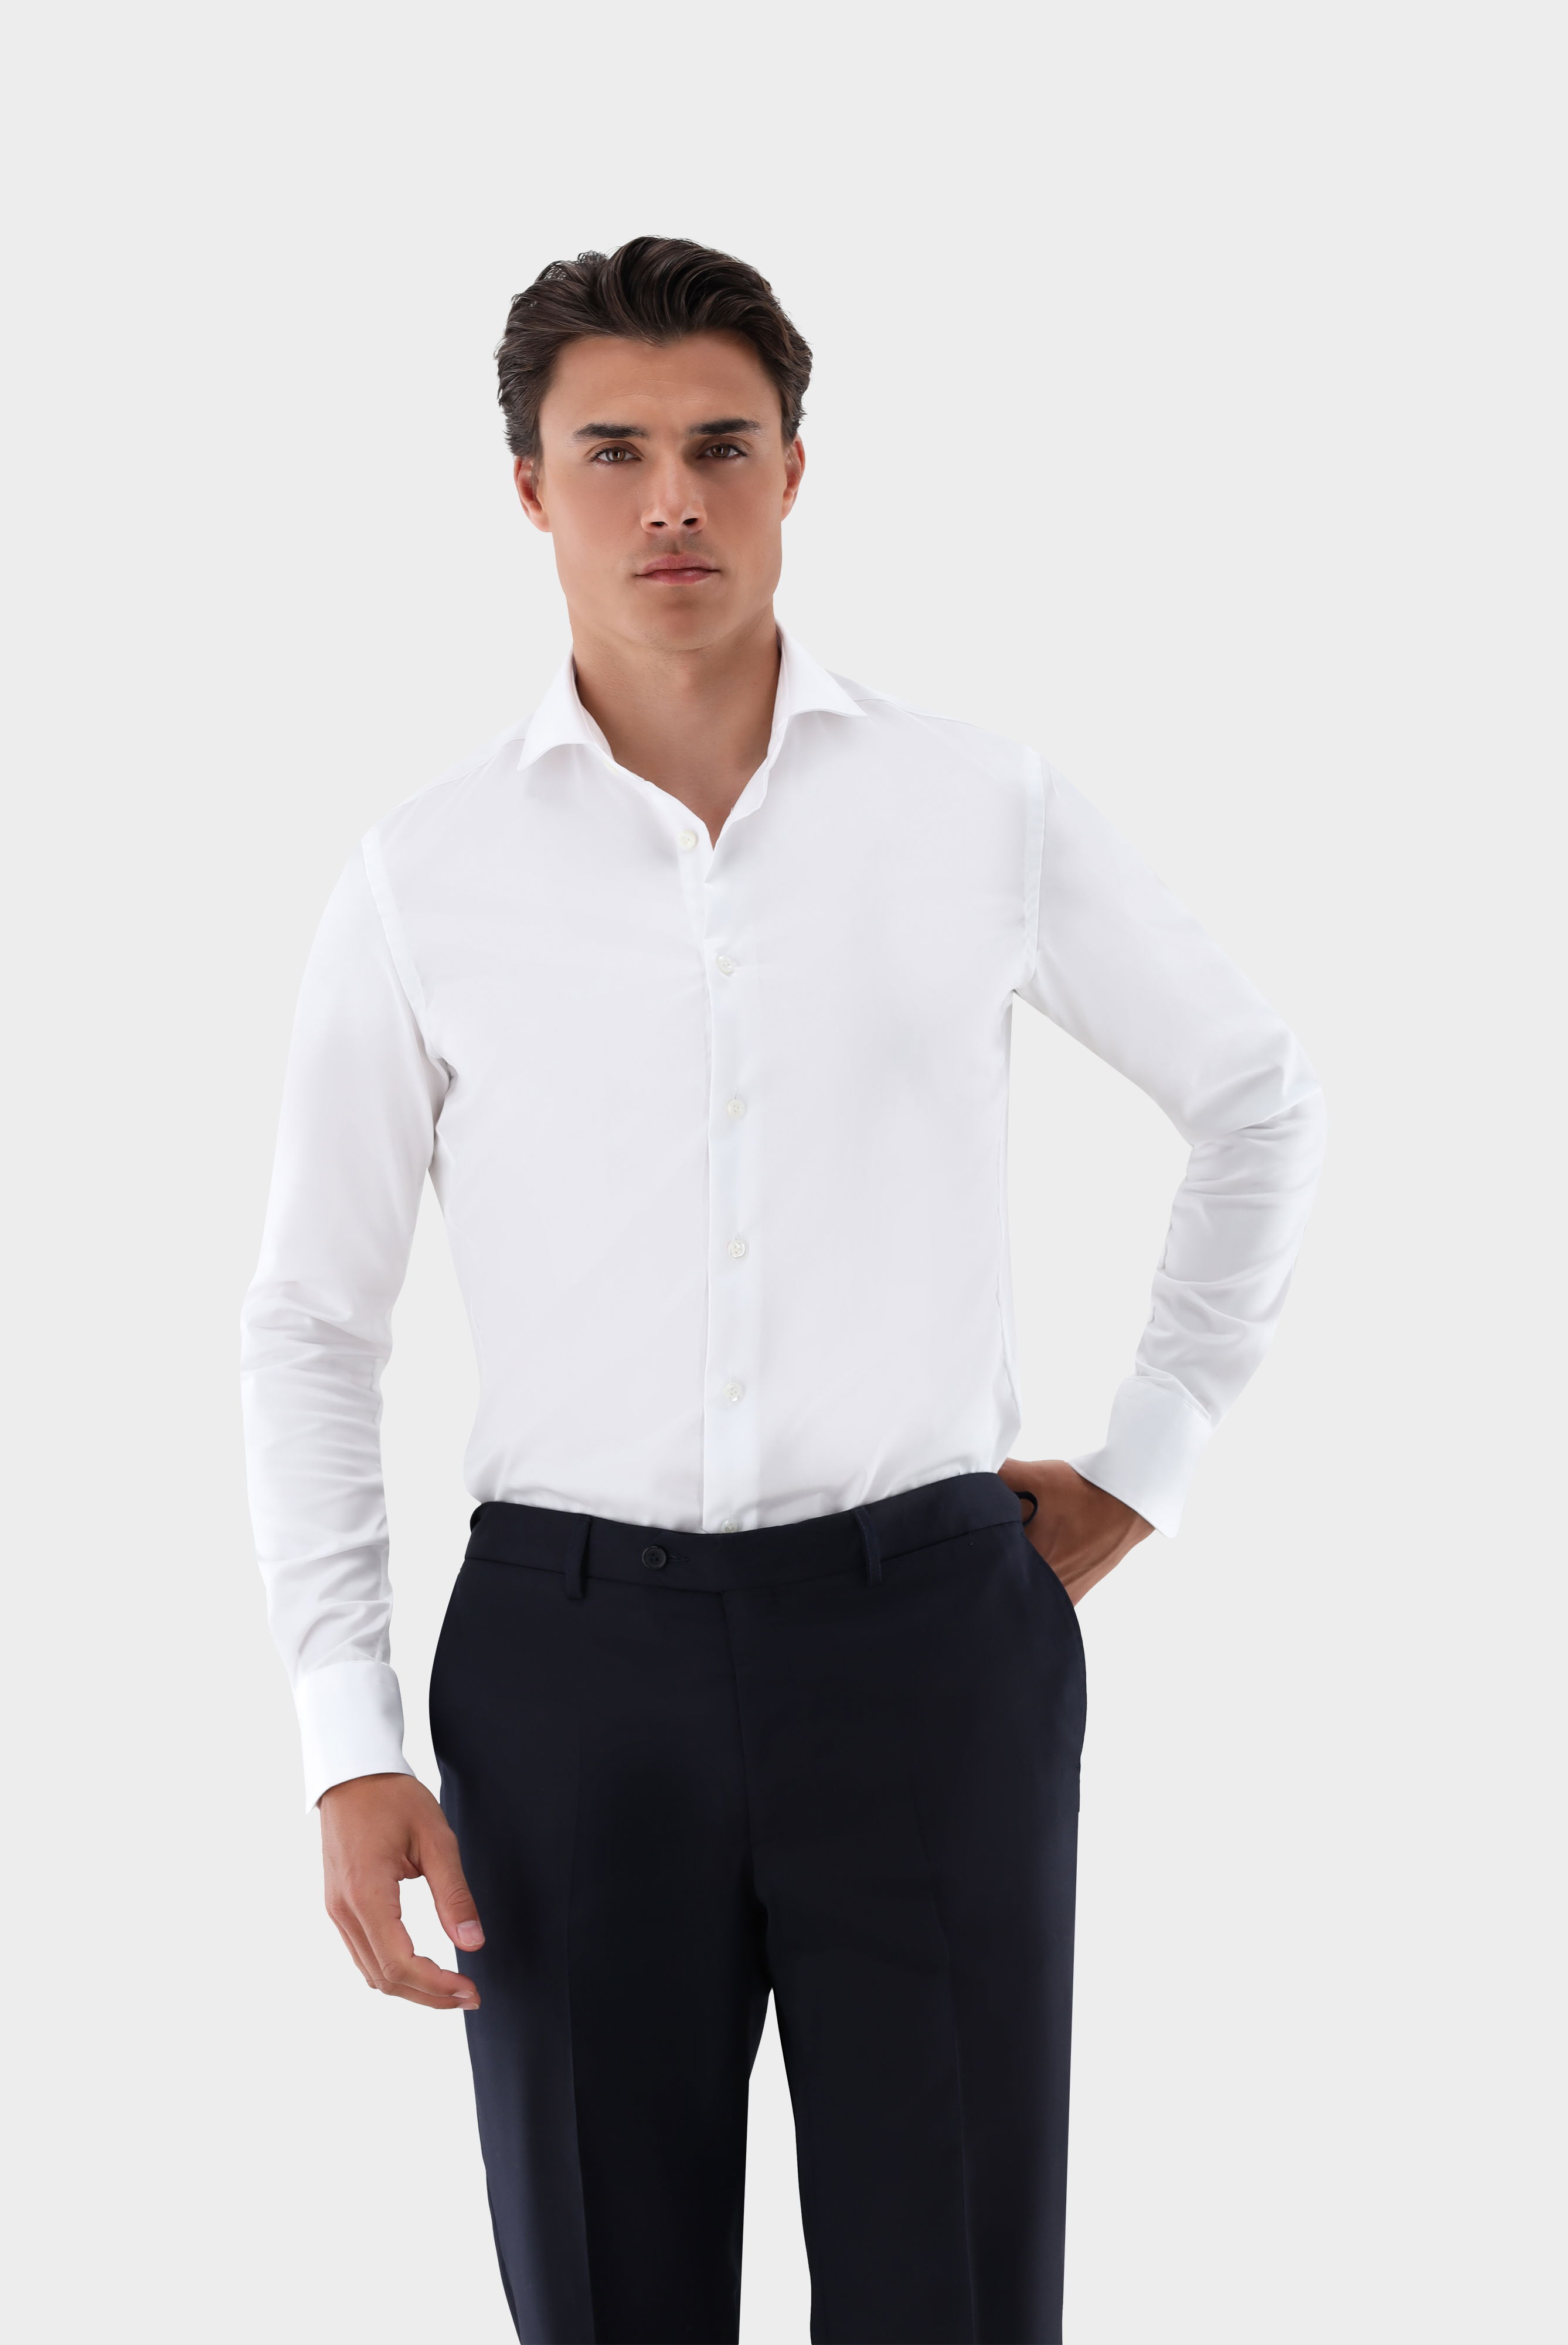 Bügelleichte Hemden+Bügelfreies Hybridshirt mit Jerseyeinsatz Slim Fit+20.2553.0F.132241.000.44